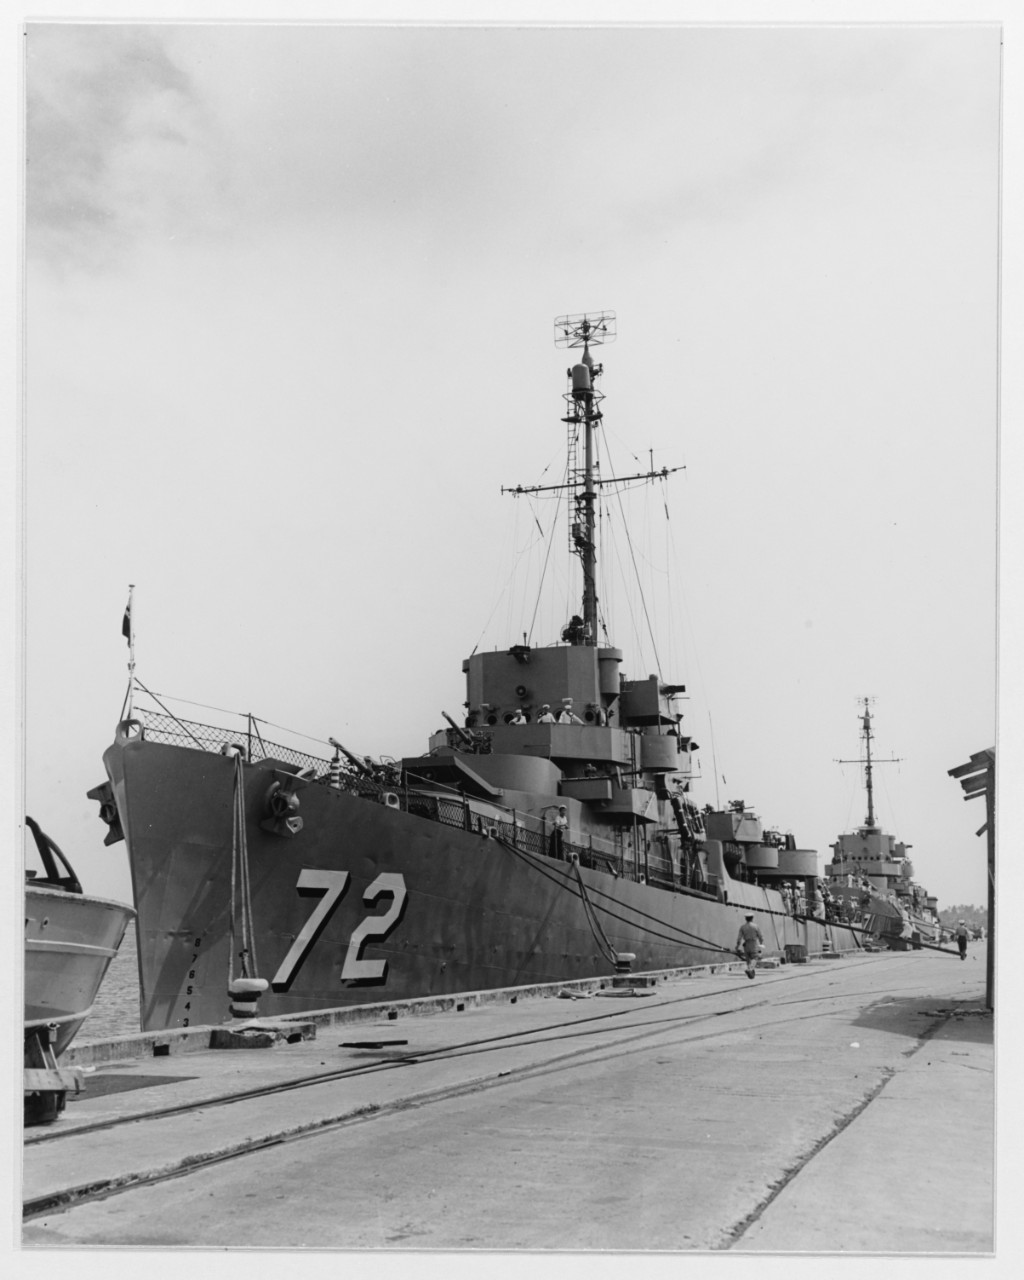 KANG WON (South Korean destroyer escort, 1944)